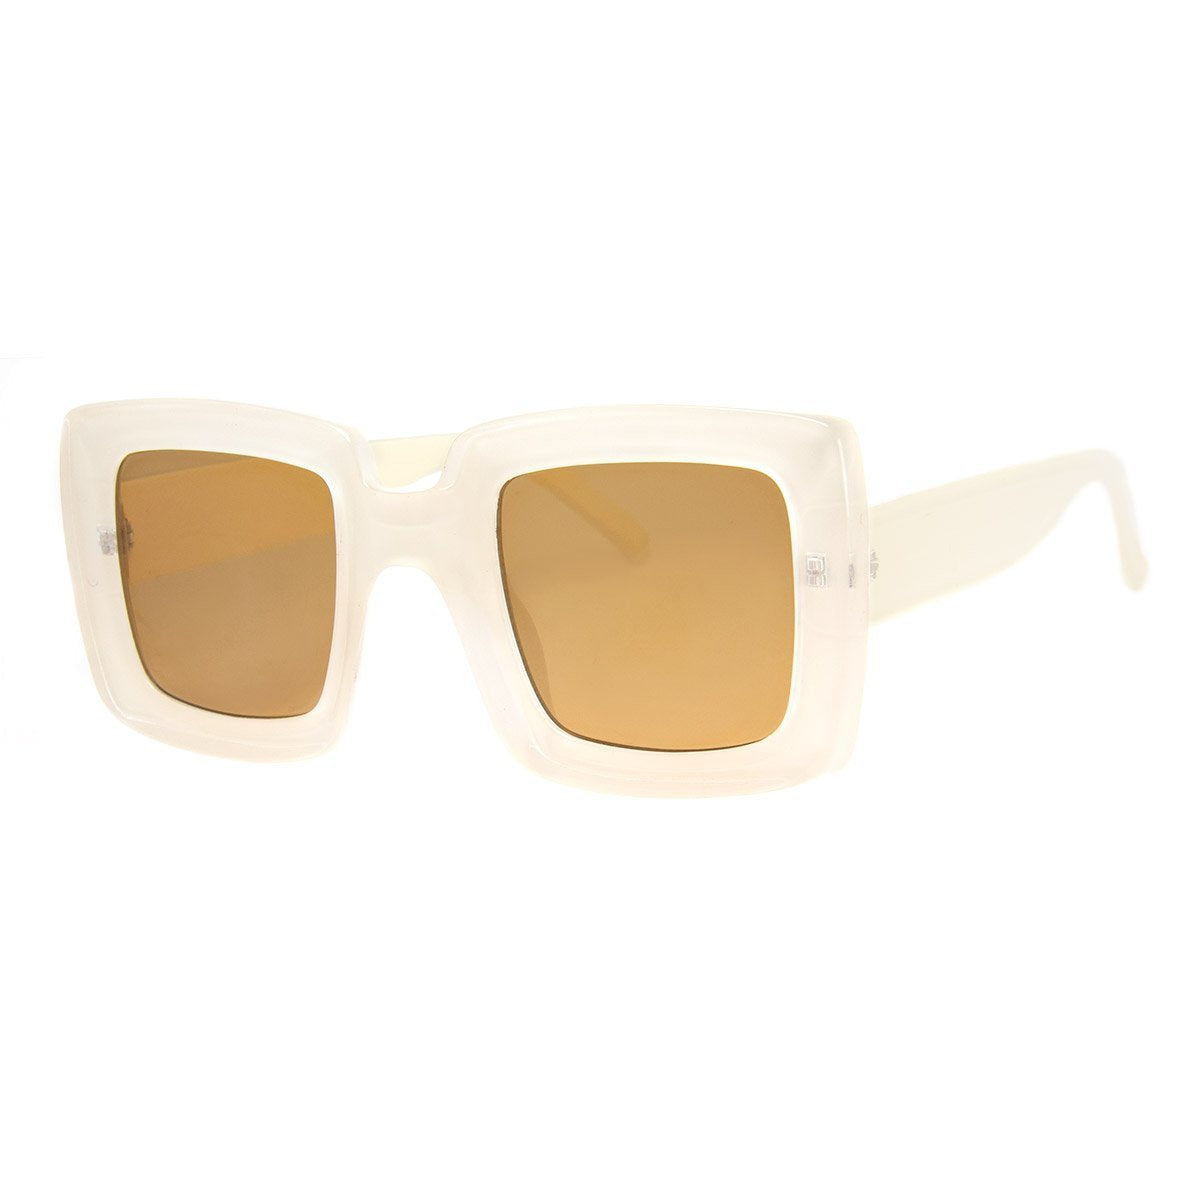 Optimum Sunglasses - White